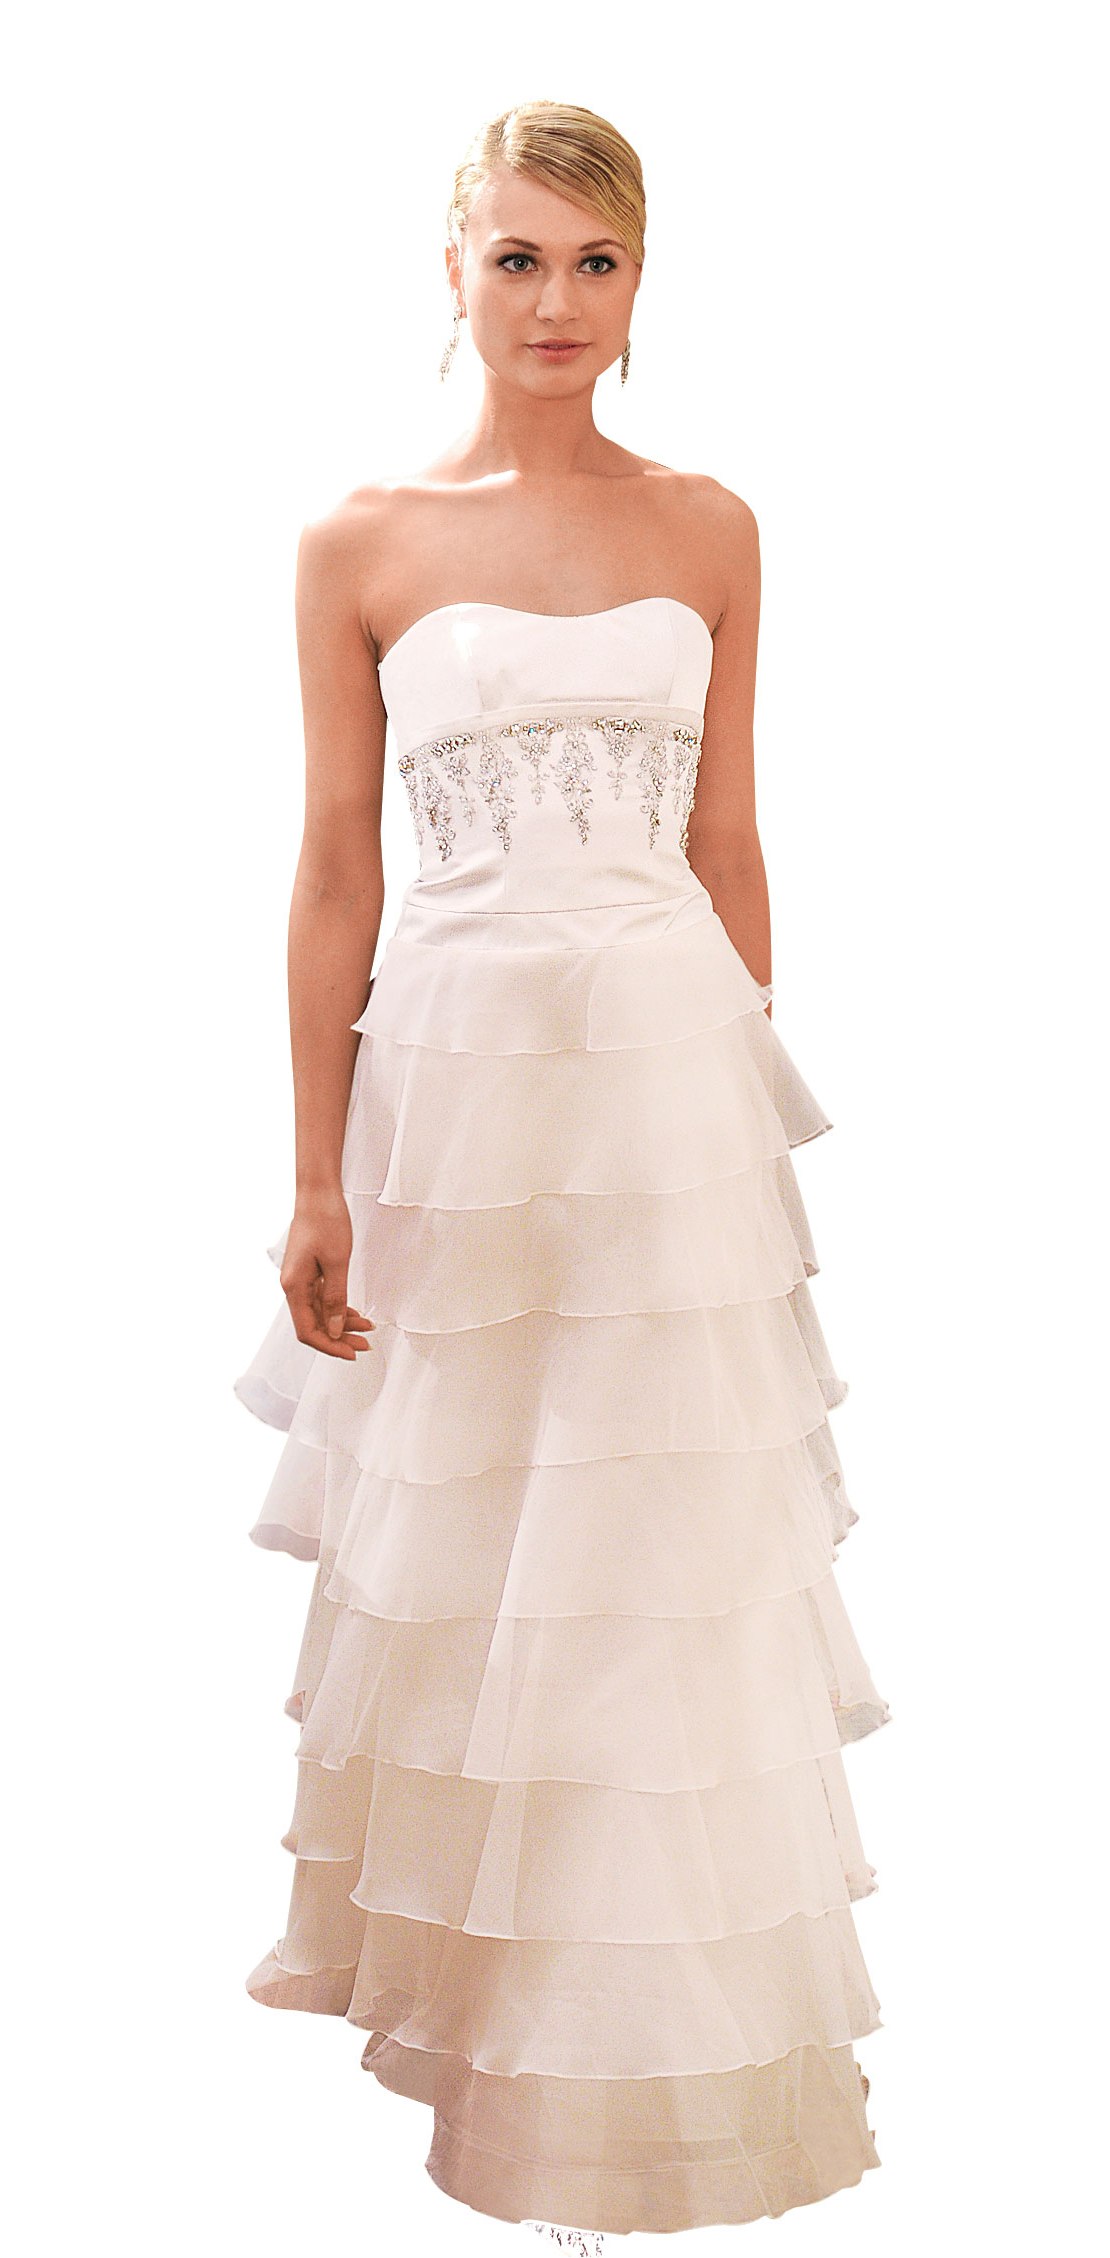 Stunning empire waist wedding dress